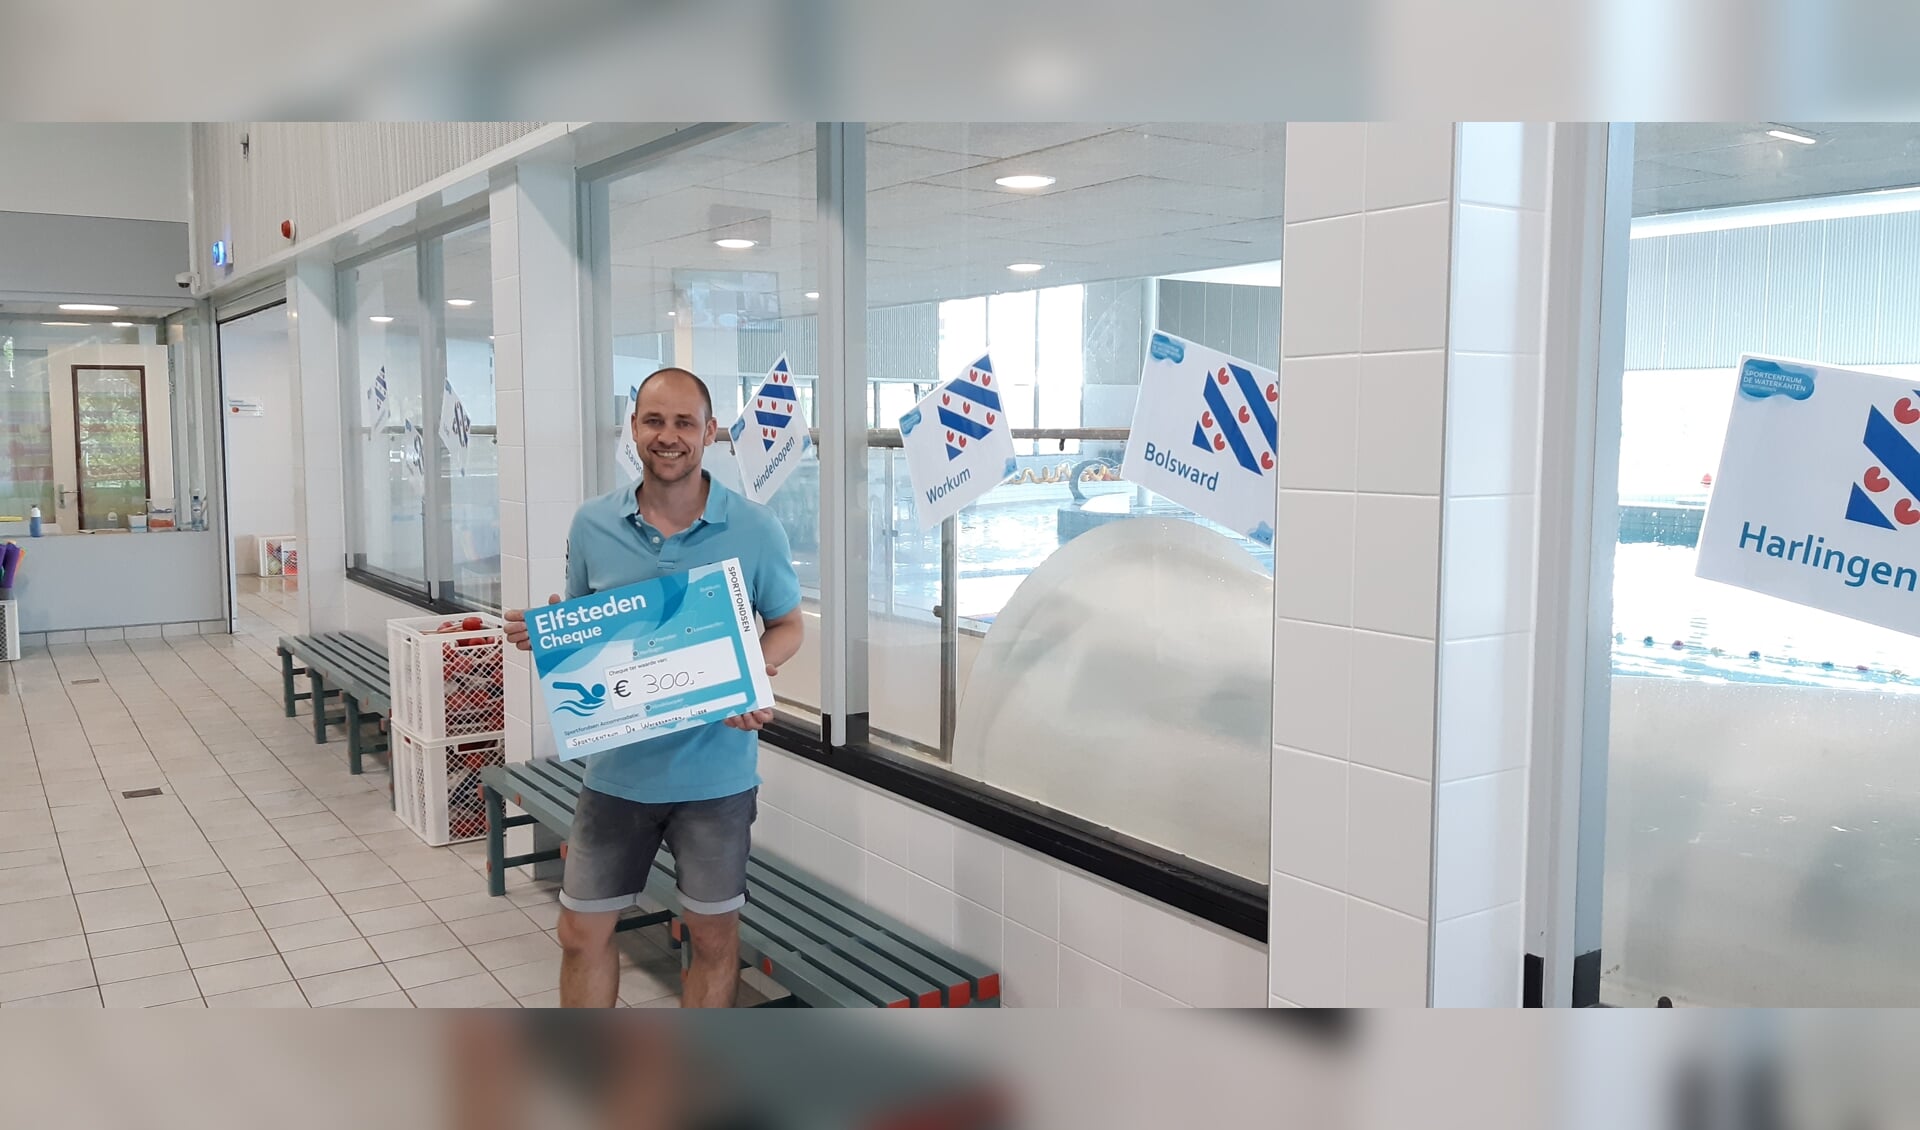 Zwemmers bij Sportcentrum De Waterkanten sponsorden de Maarten van der Weijden Foundation.